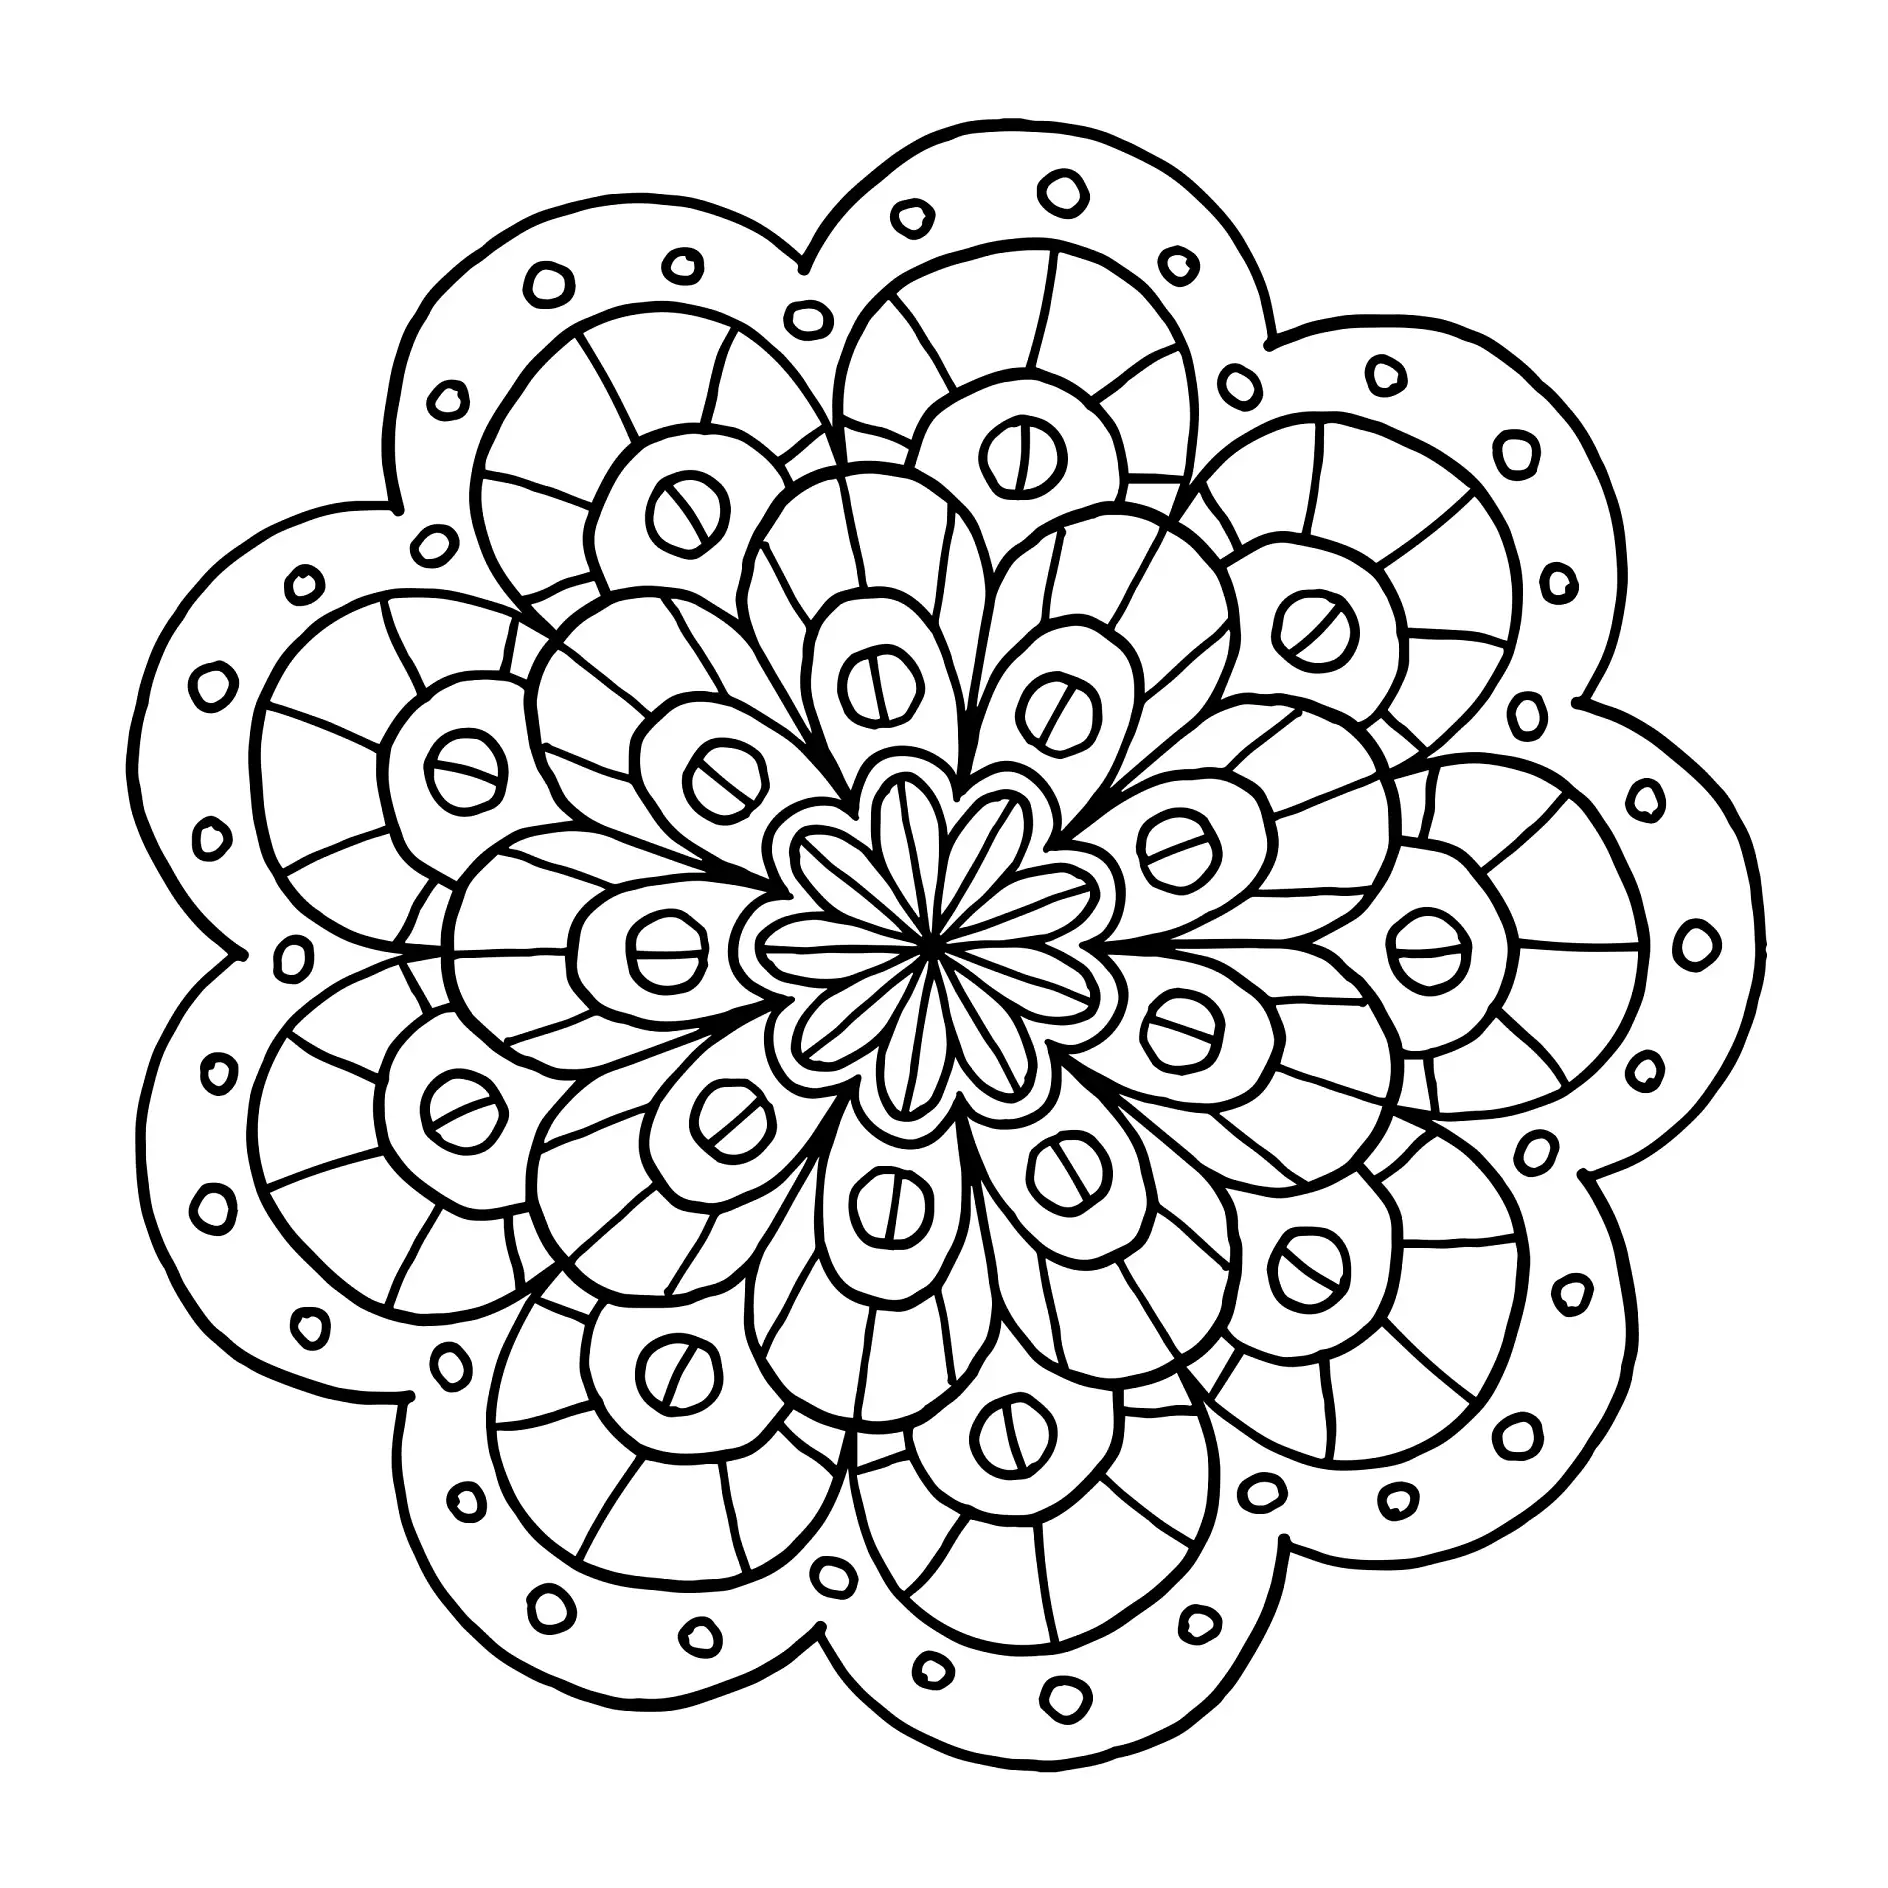 Ausmalbild Mandala mit runden Mustern